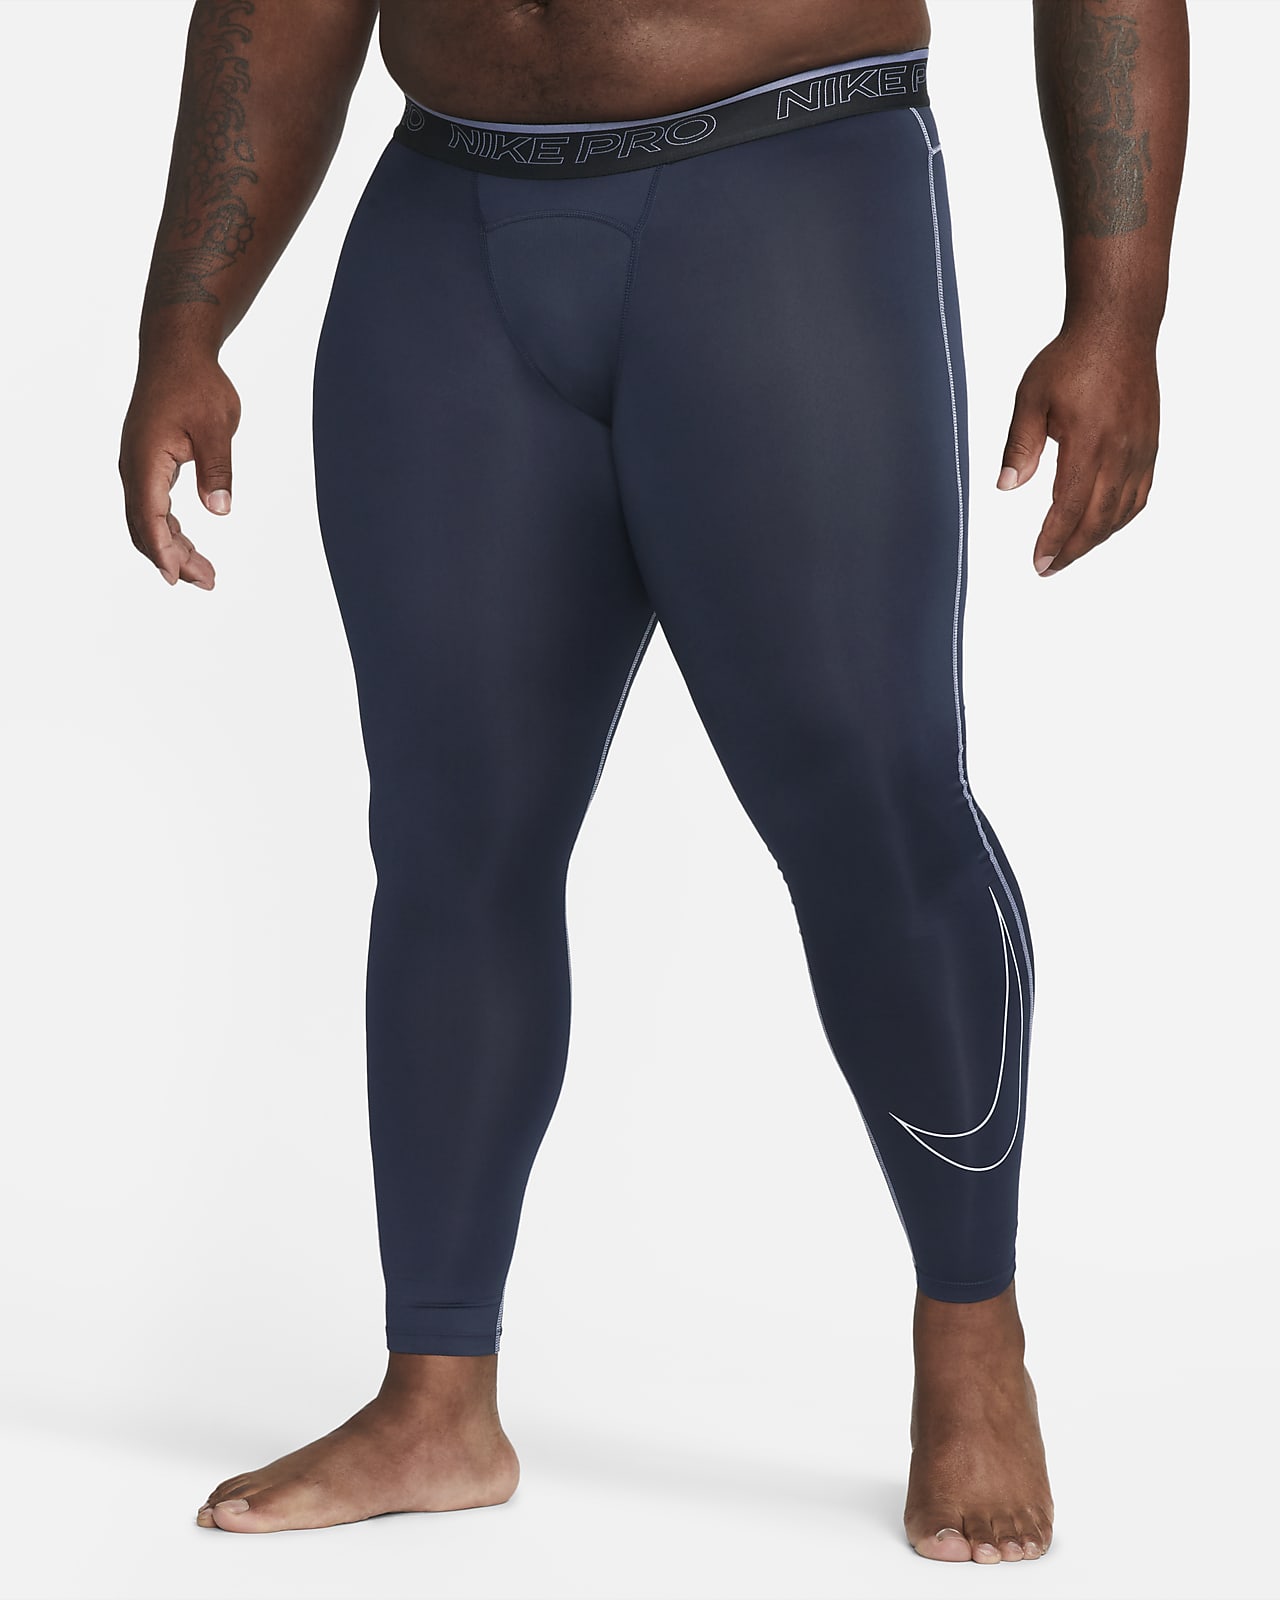 Nike Men's Pro Dri-Fit 3/4-Length Fitness Tights, Medium, White